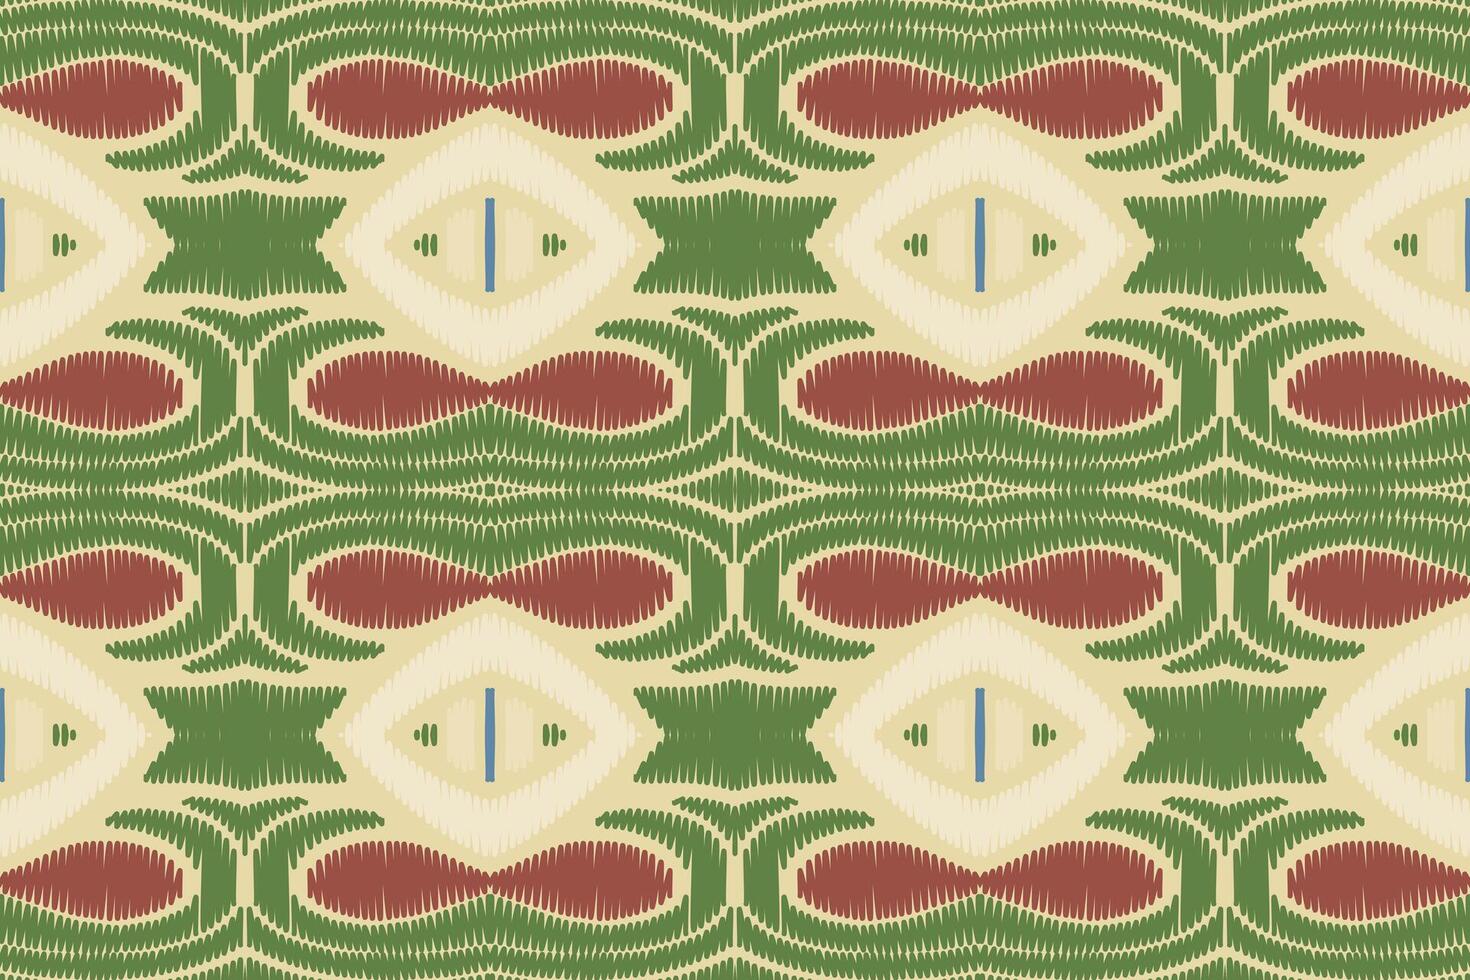 ikat entwirft nahtloses muster des stammeskreuzes. ethnische geometrische batik ikkat digitaler vektor textildesign für drucke stoff saree mughal pinsel symbol schwaden textur kurti kurtis kurtas